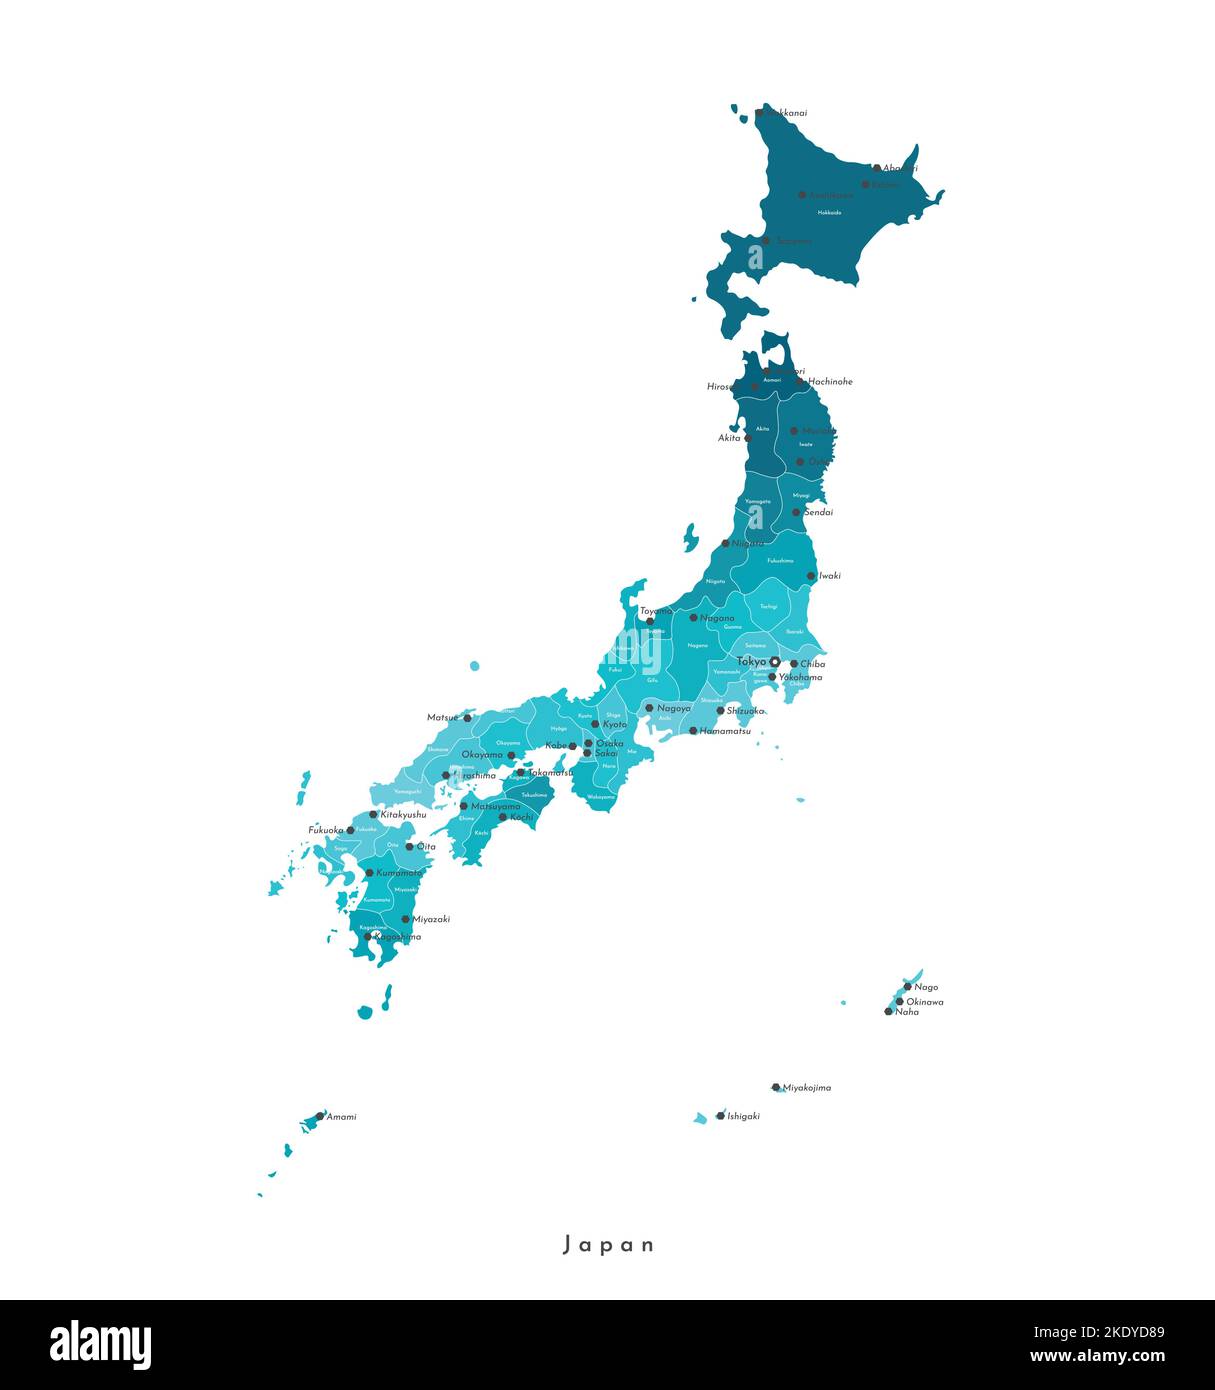 Illustration vectorielle isolée. Carte administrative simplifiée du Japon. Formes bleues des régions. Noms des villes et préfectures japonaises. Fond blanc Illustration de Vecteur